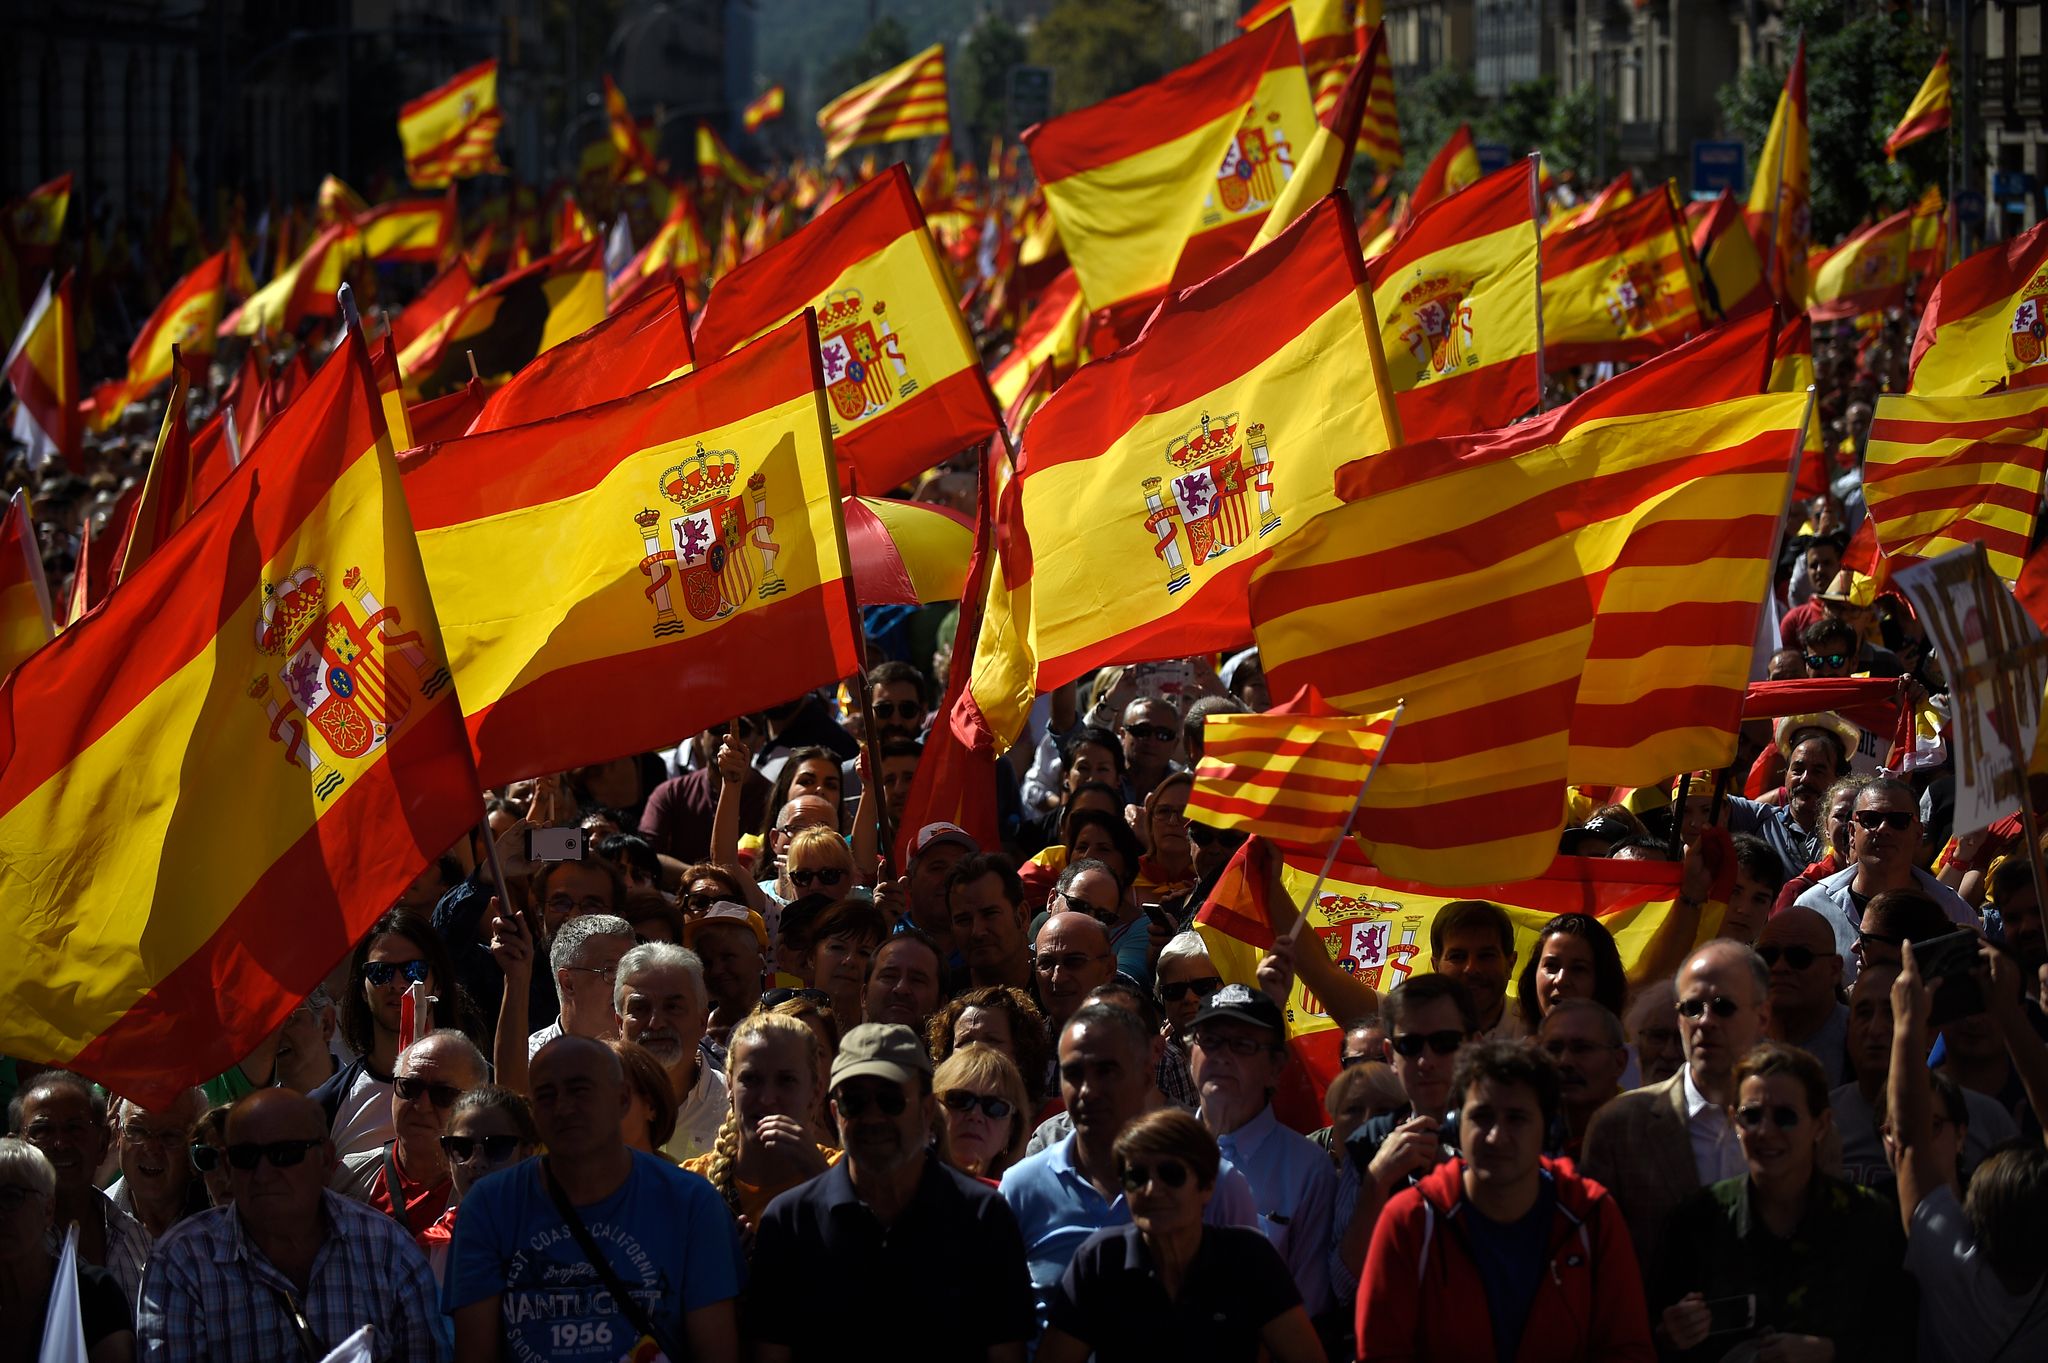 Les ventes du drapeau national explosent en Espagne